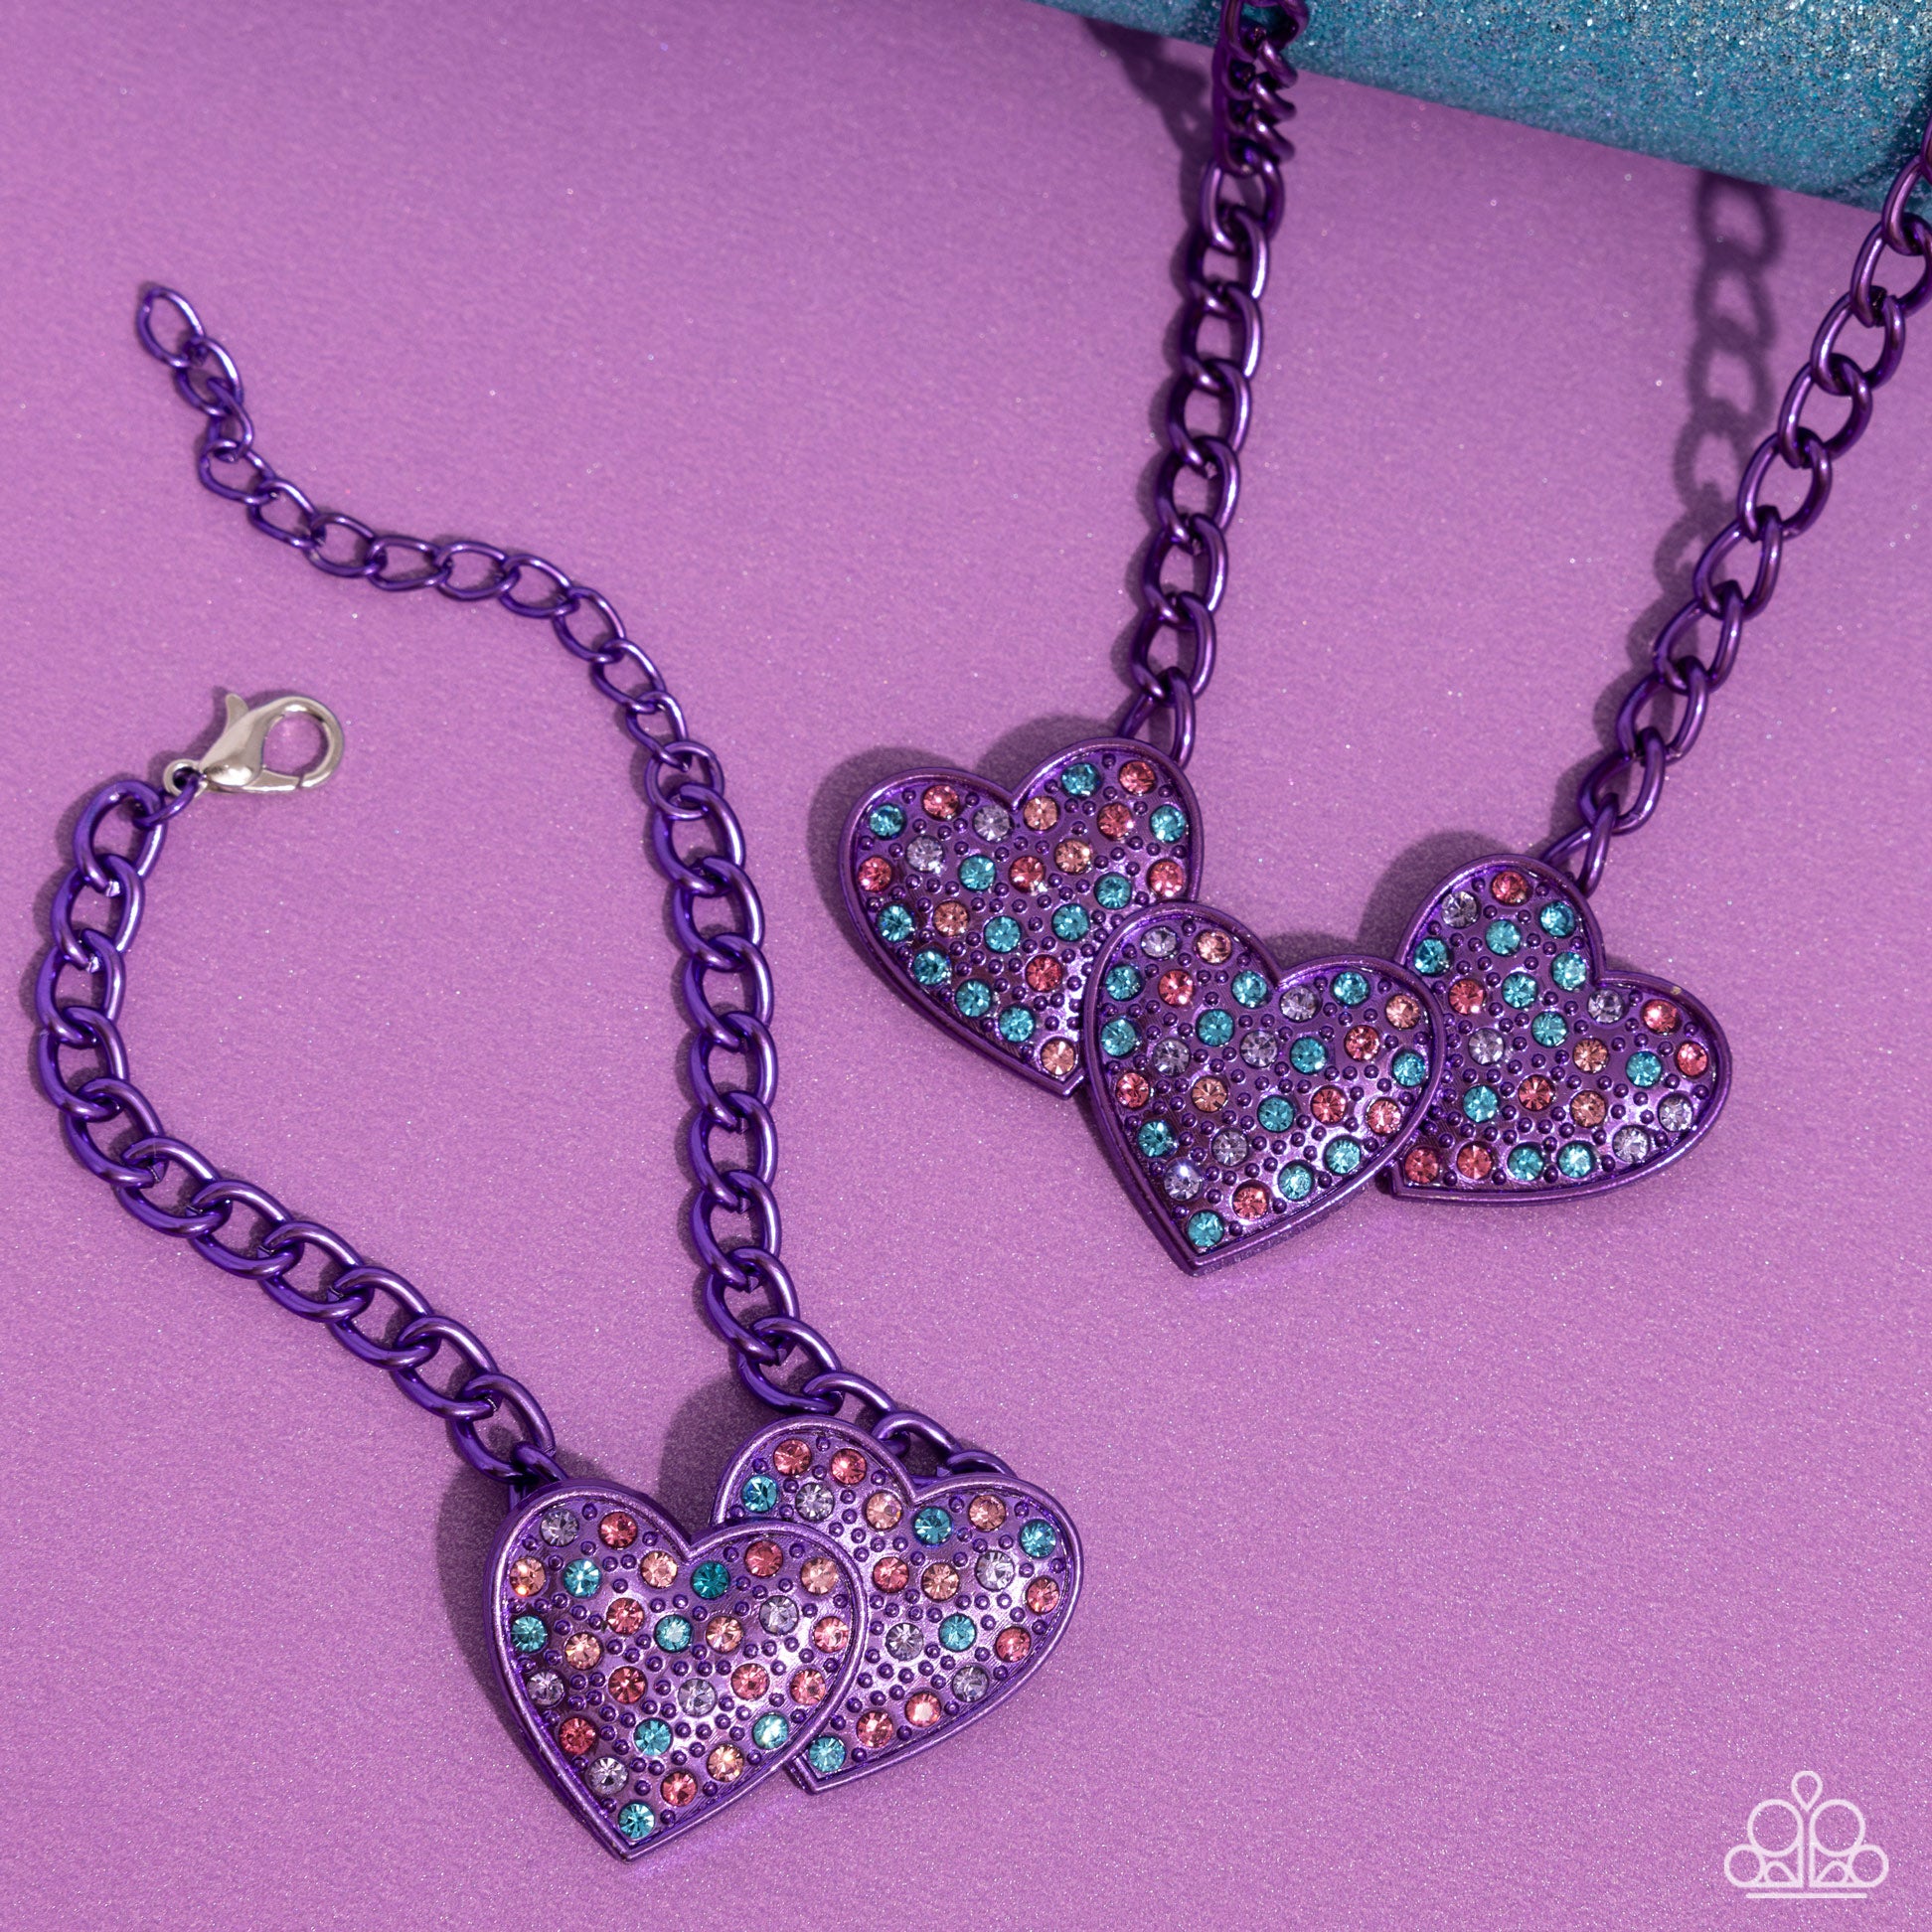 Low-Key Lovestruck Necklace (Pink, Purple)